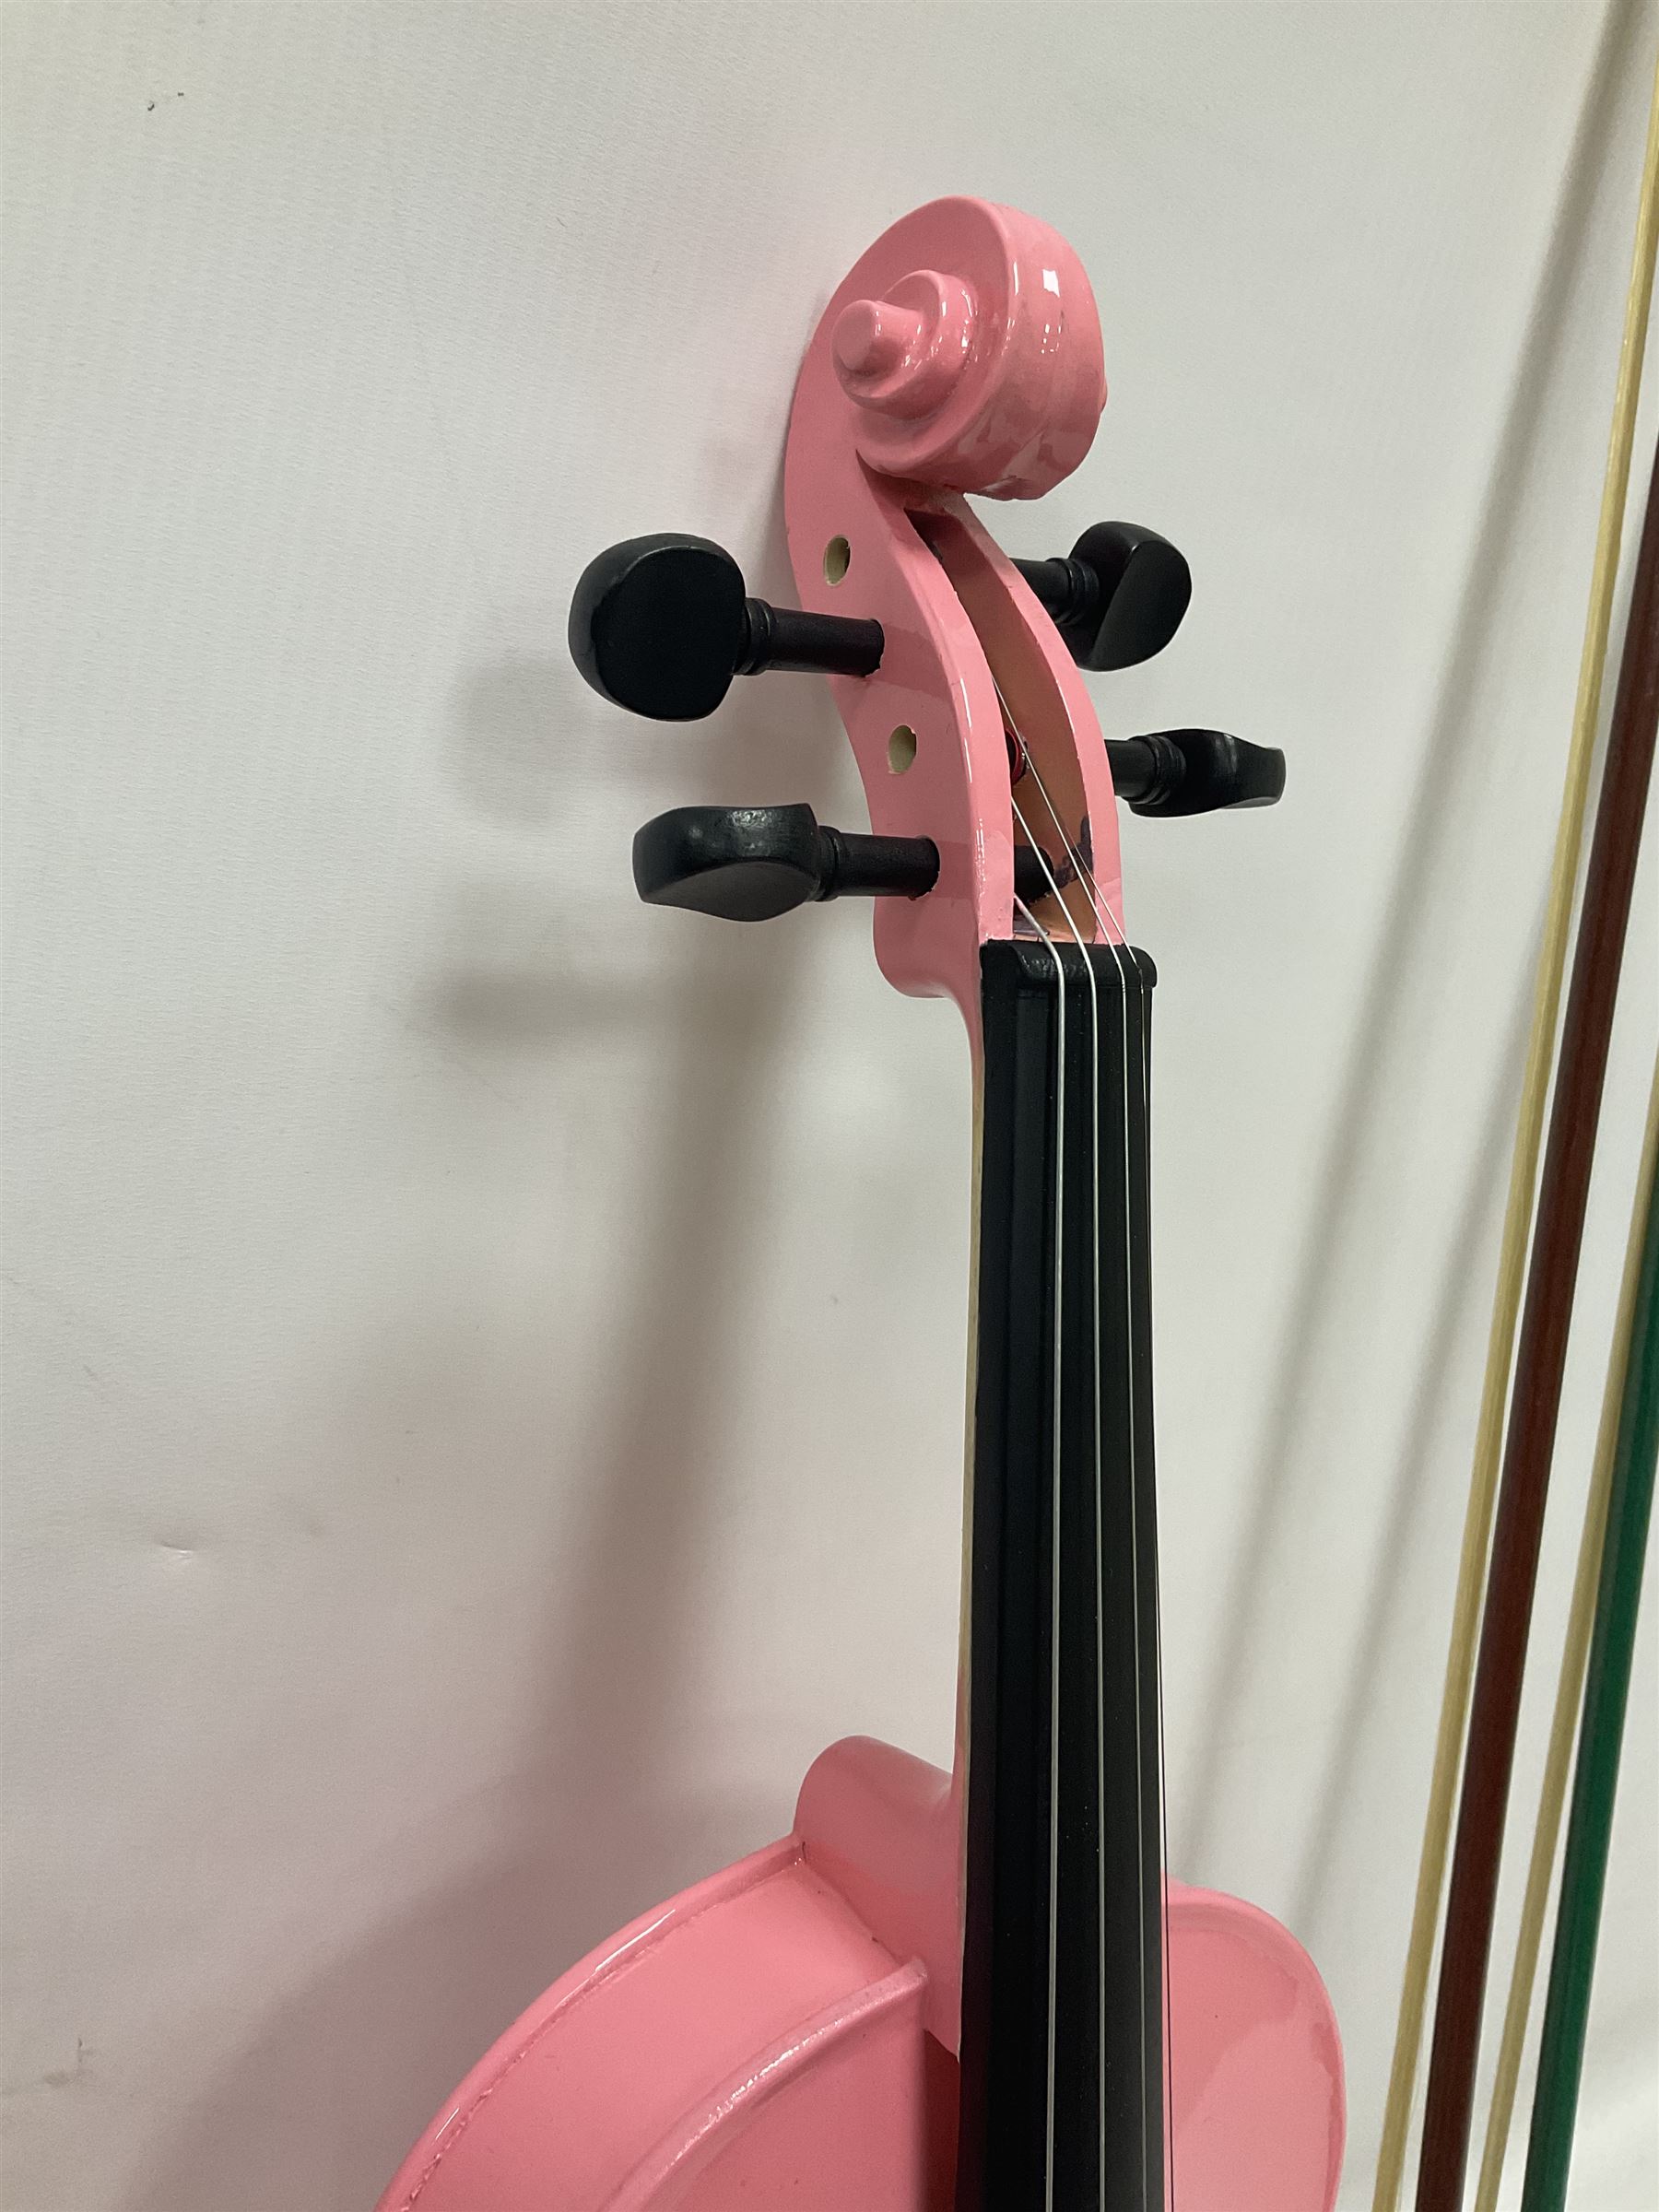 Zest full size pink violin - Image 11 of 32